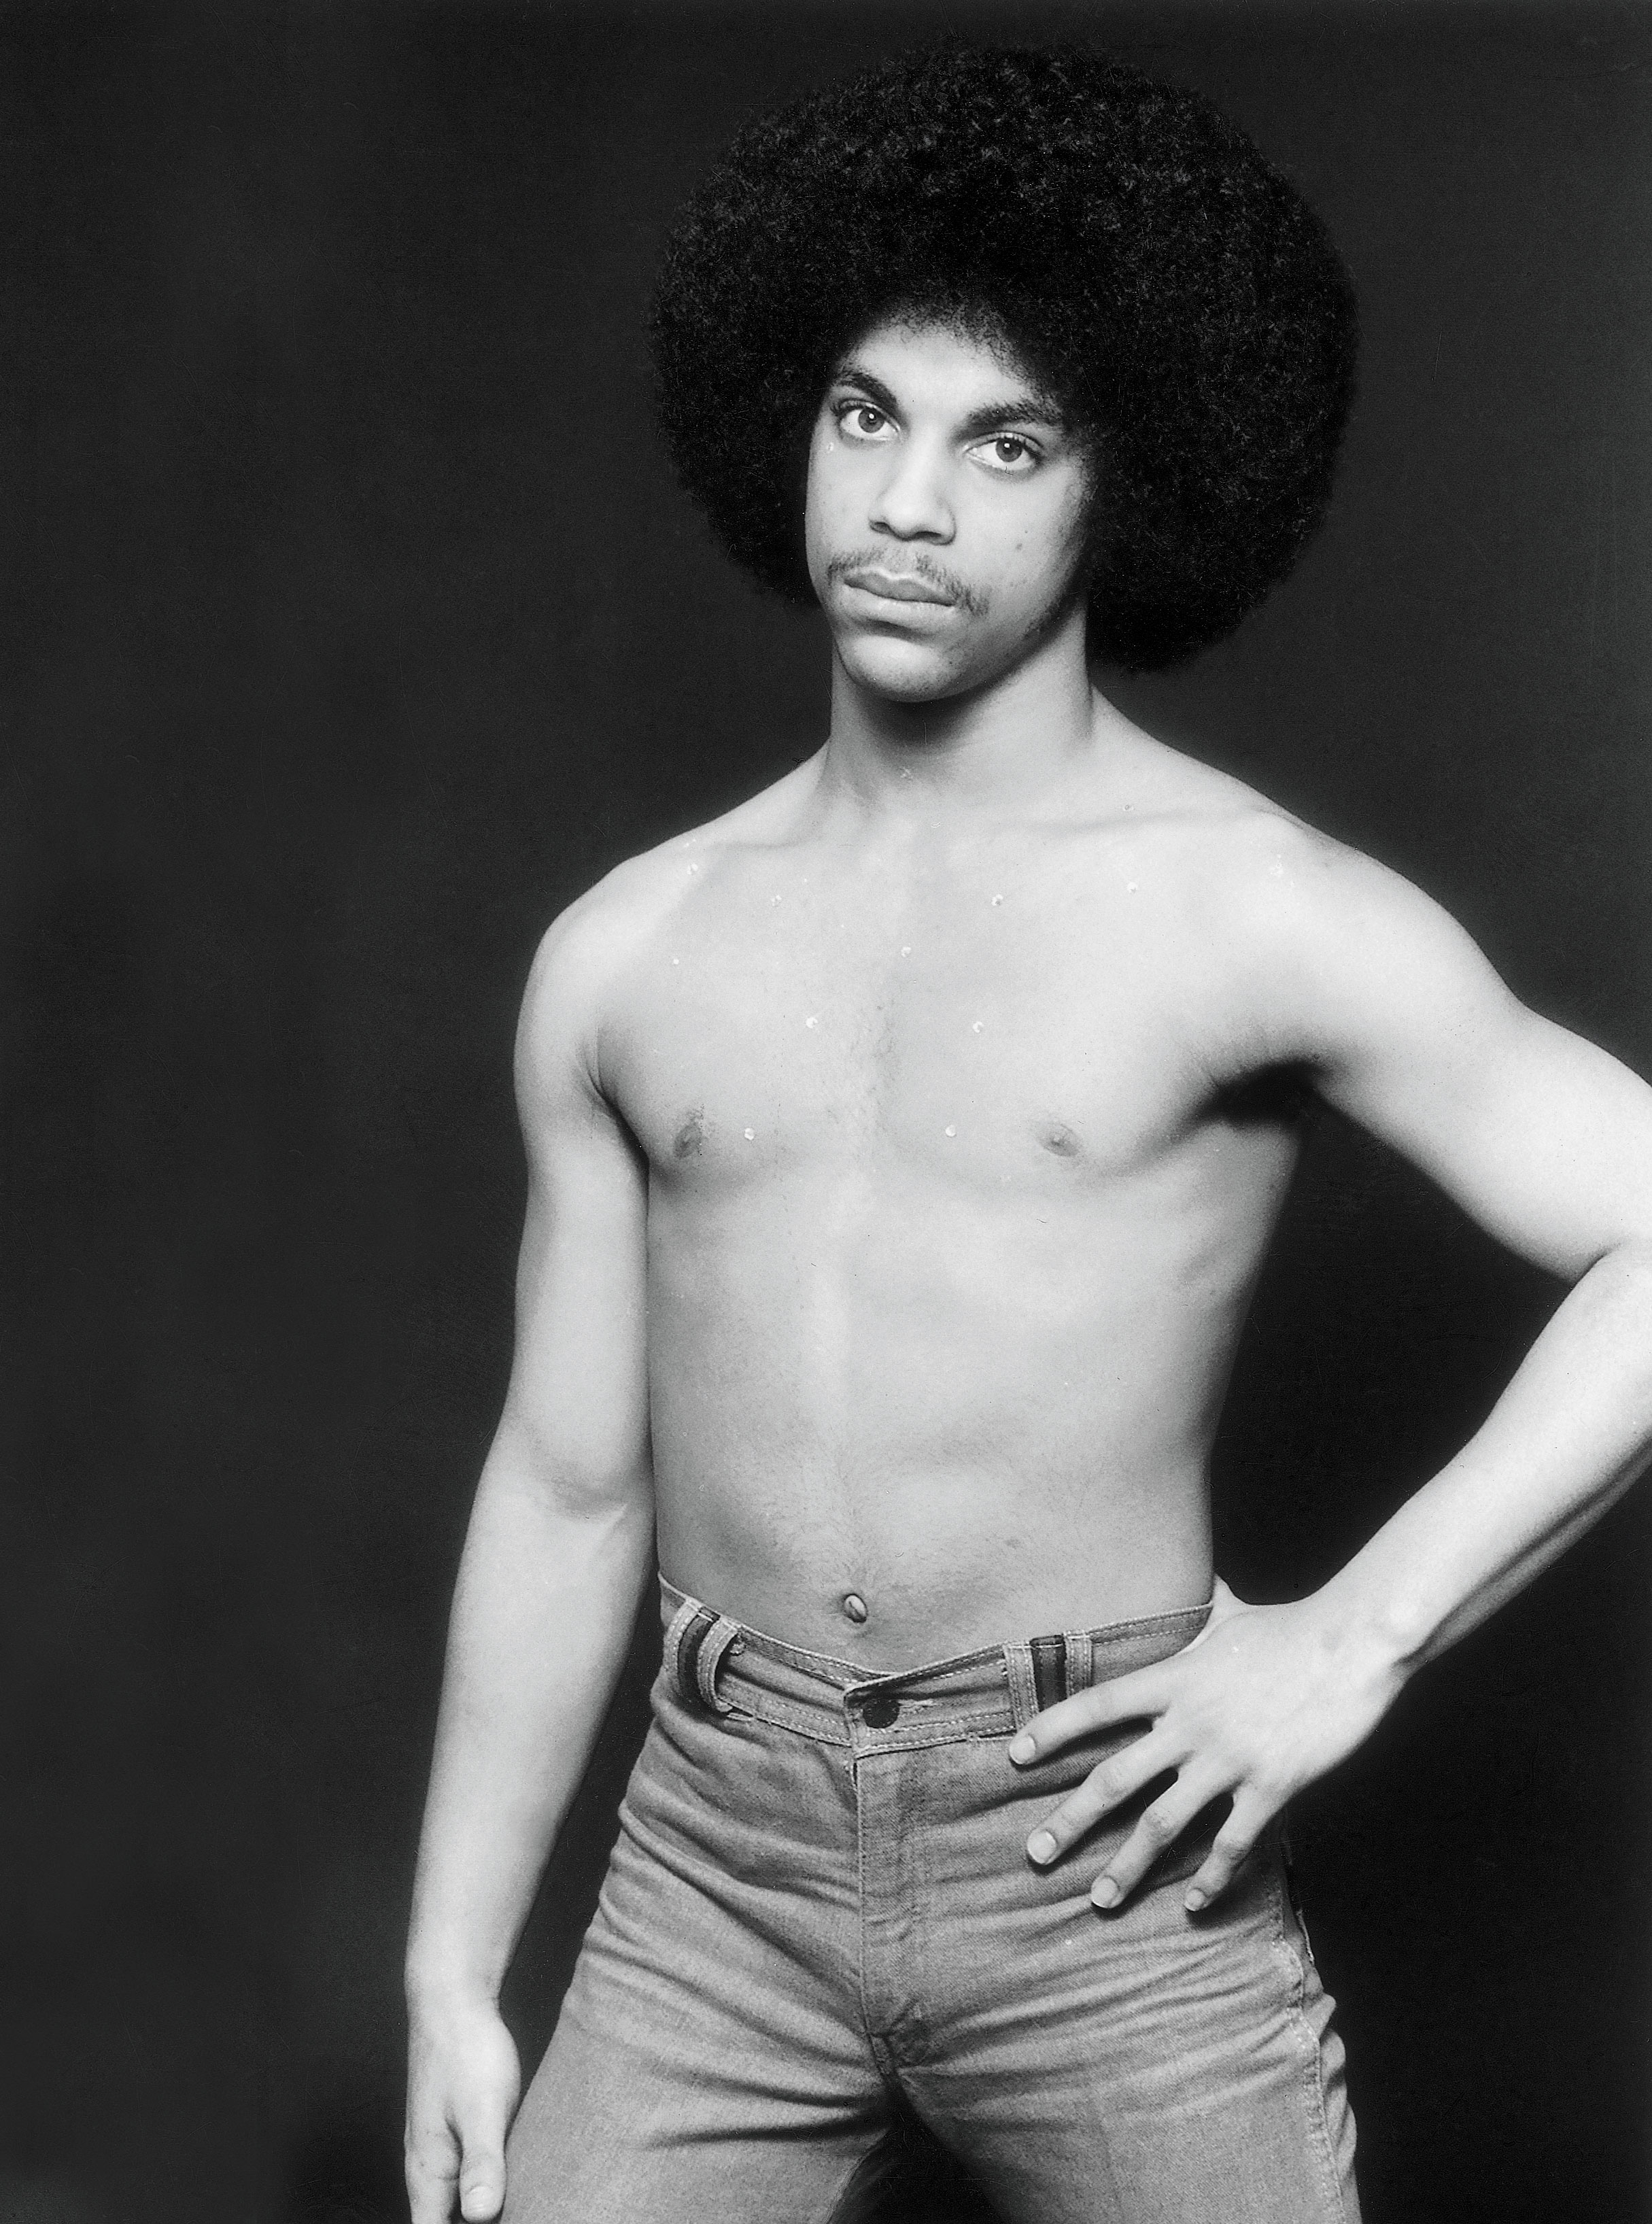 Young Prince circa 1979